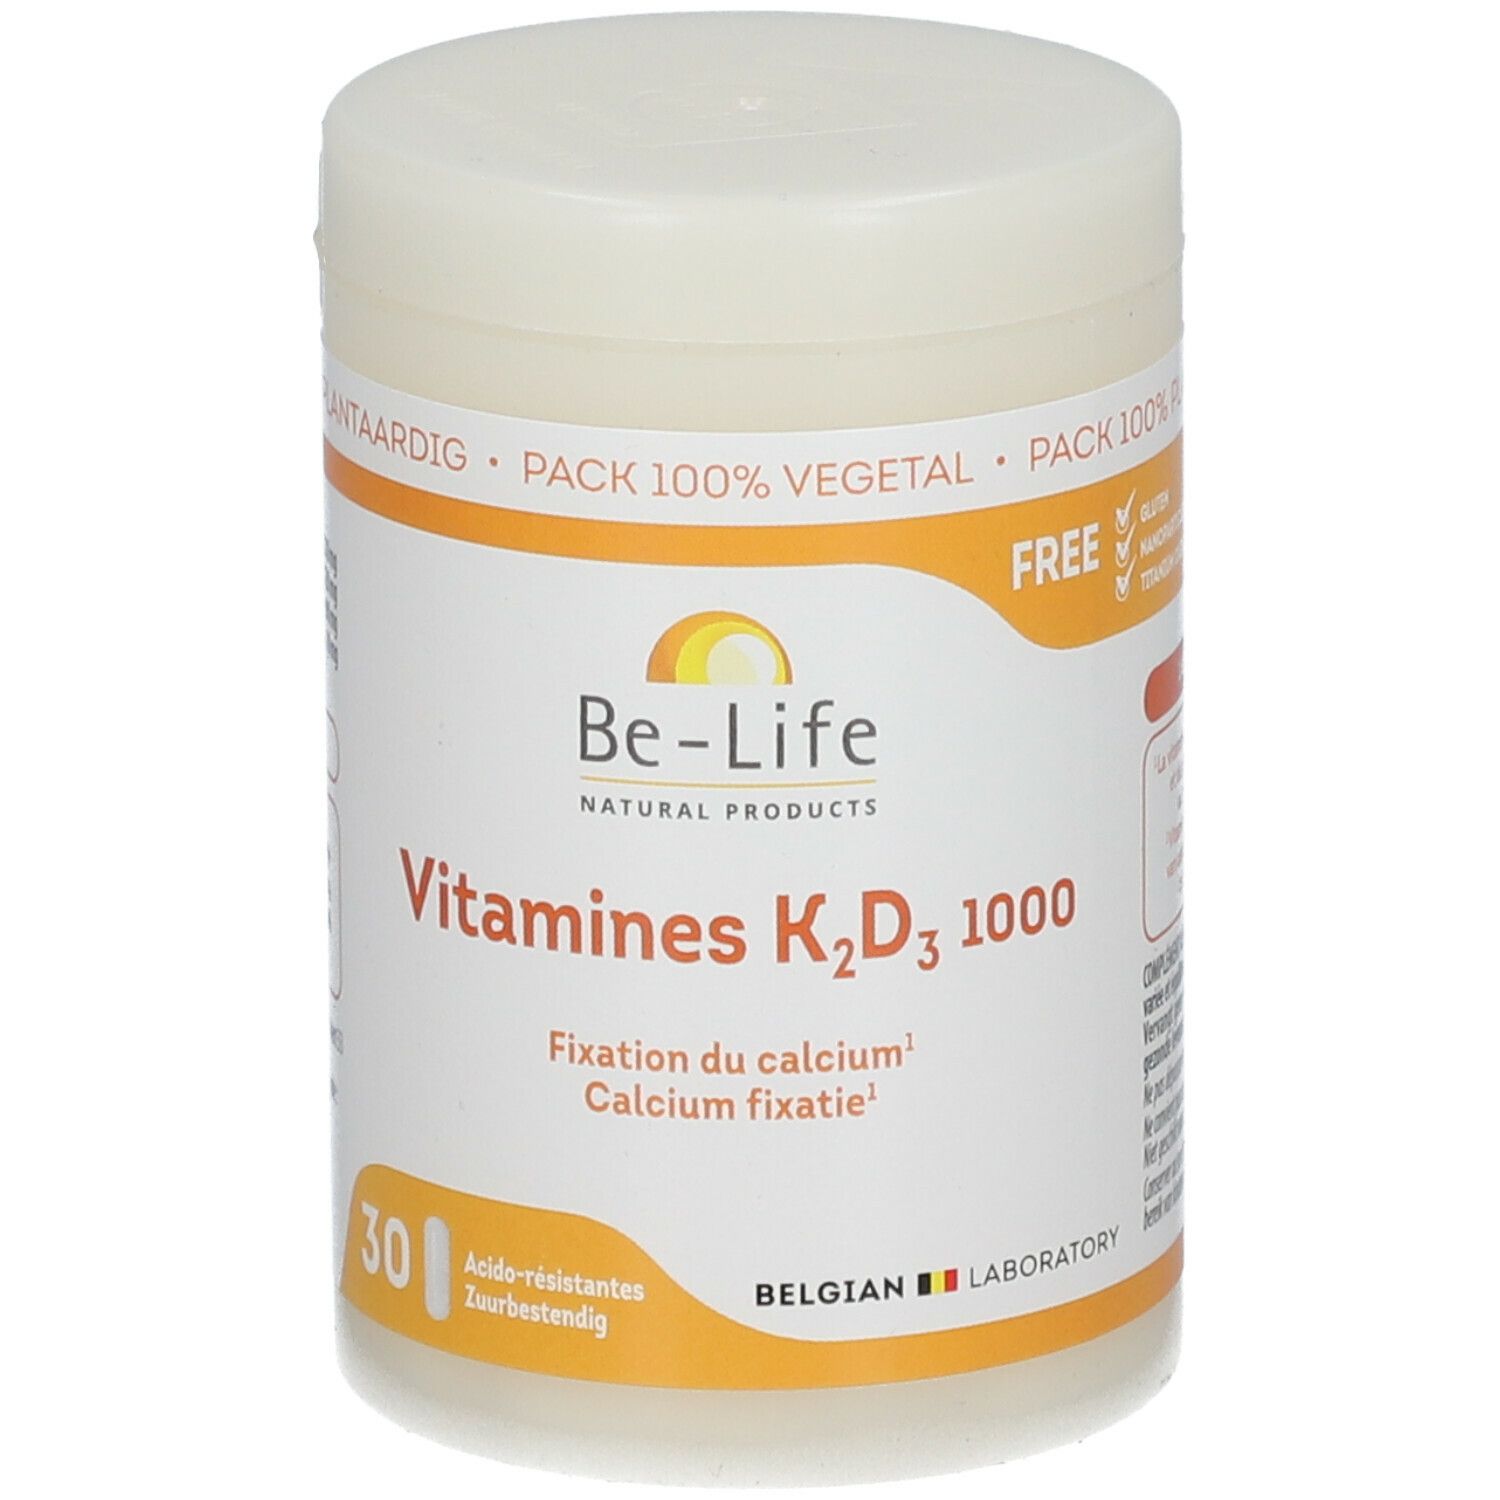 BIO LIFE SPRL Be-Life Vitamin K2 D3 1000